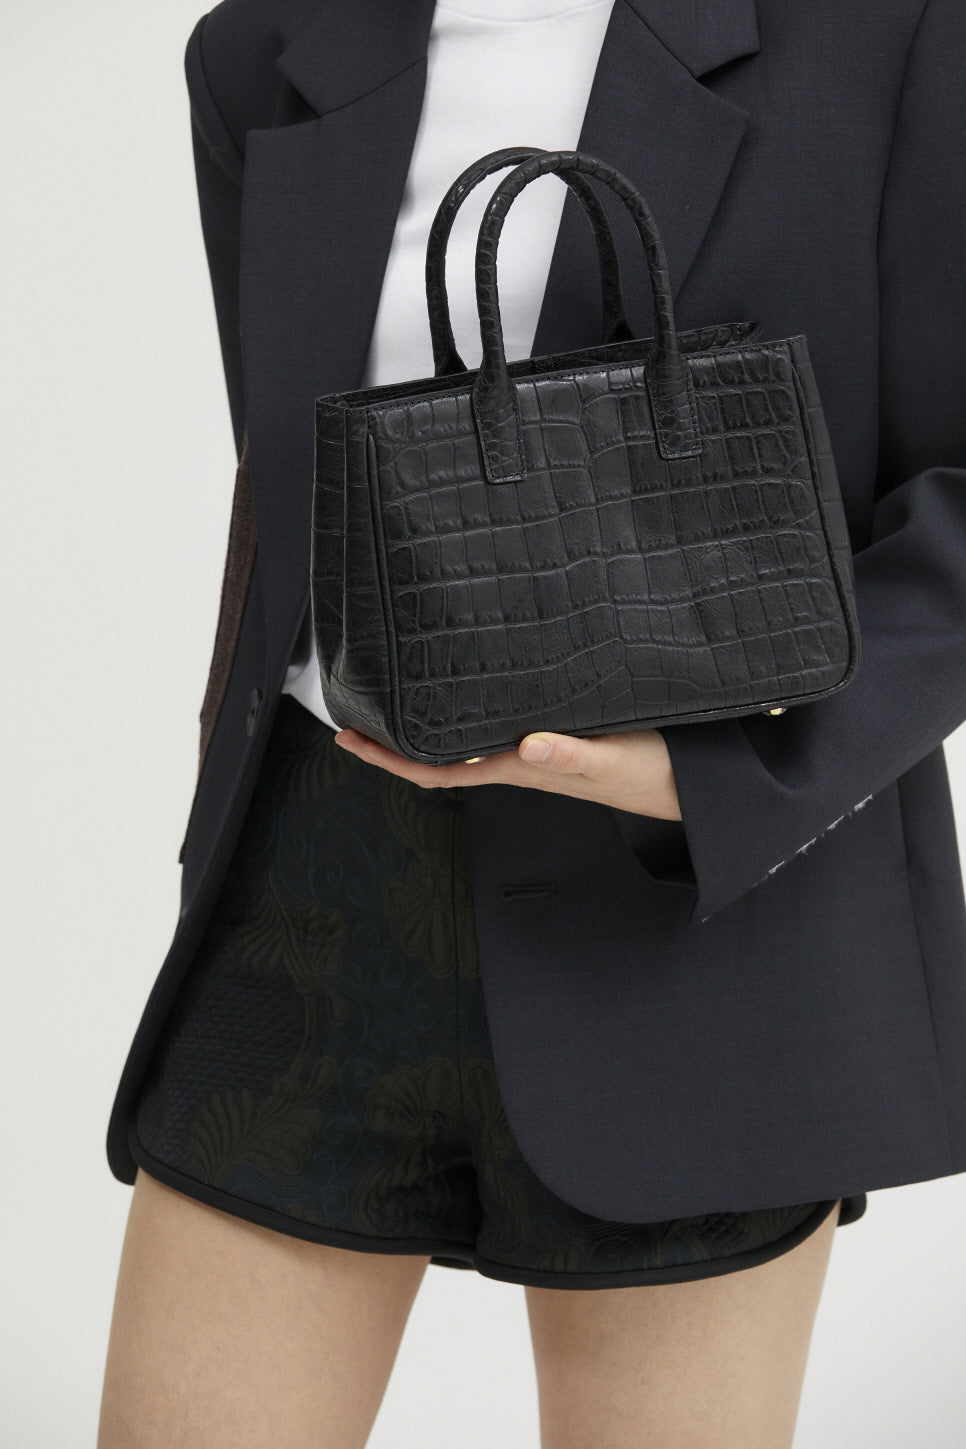 JANEPAIK SEOUL﻿ - Loui Small Bag | Black, buy at DOORS NYC